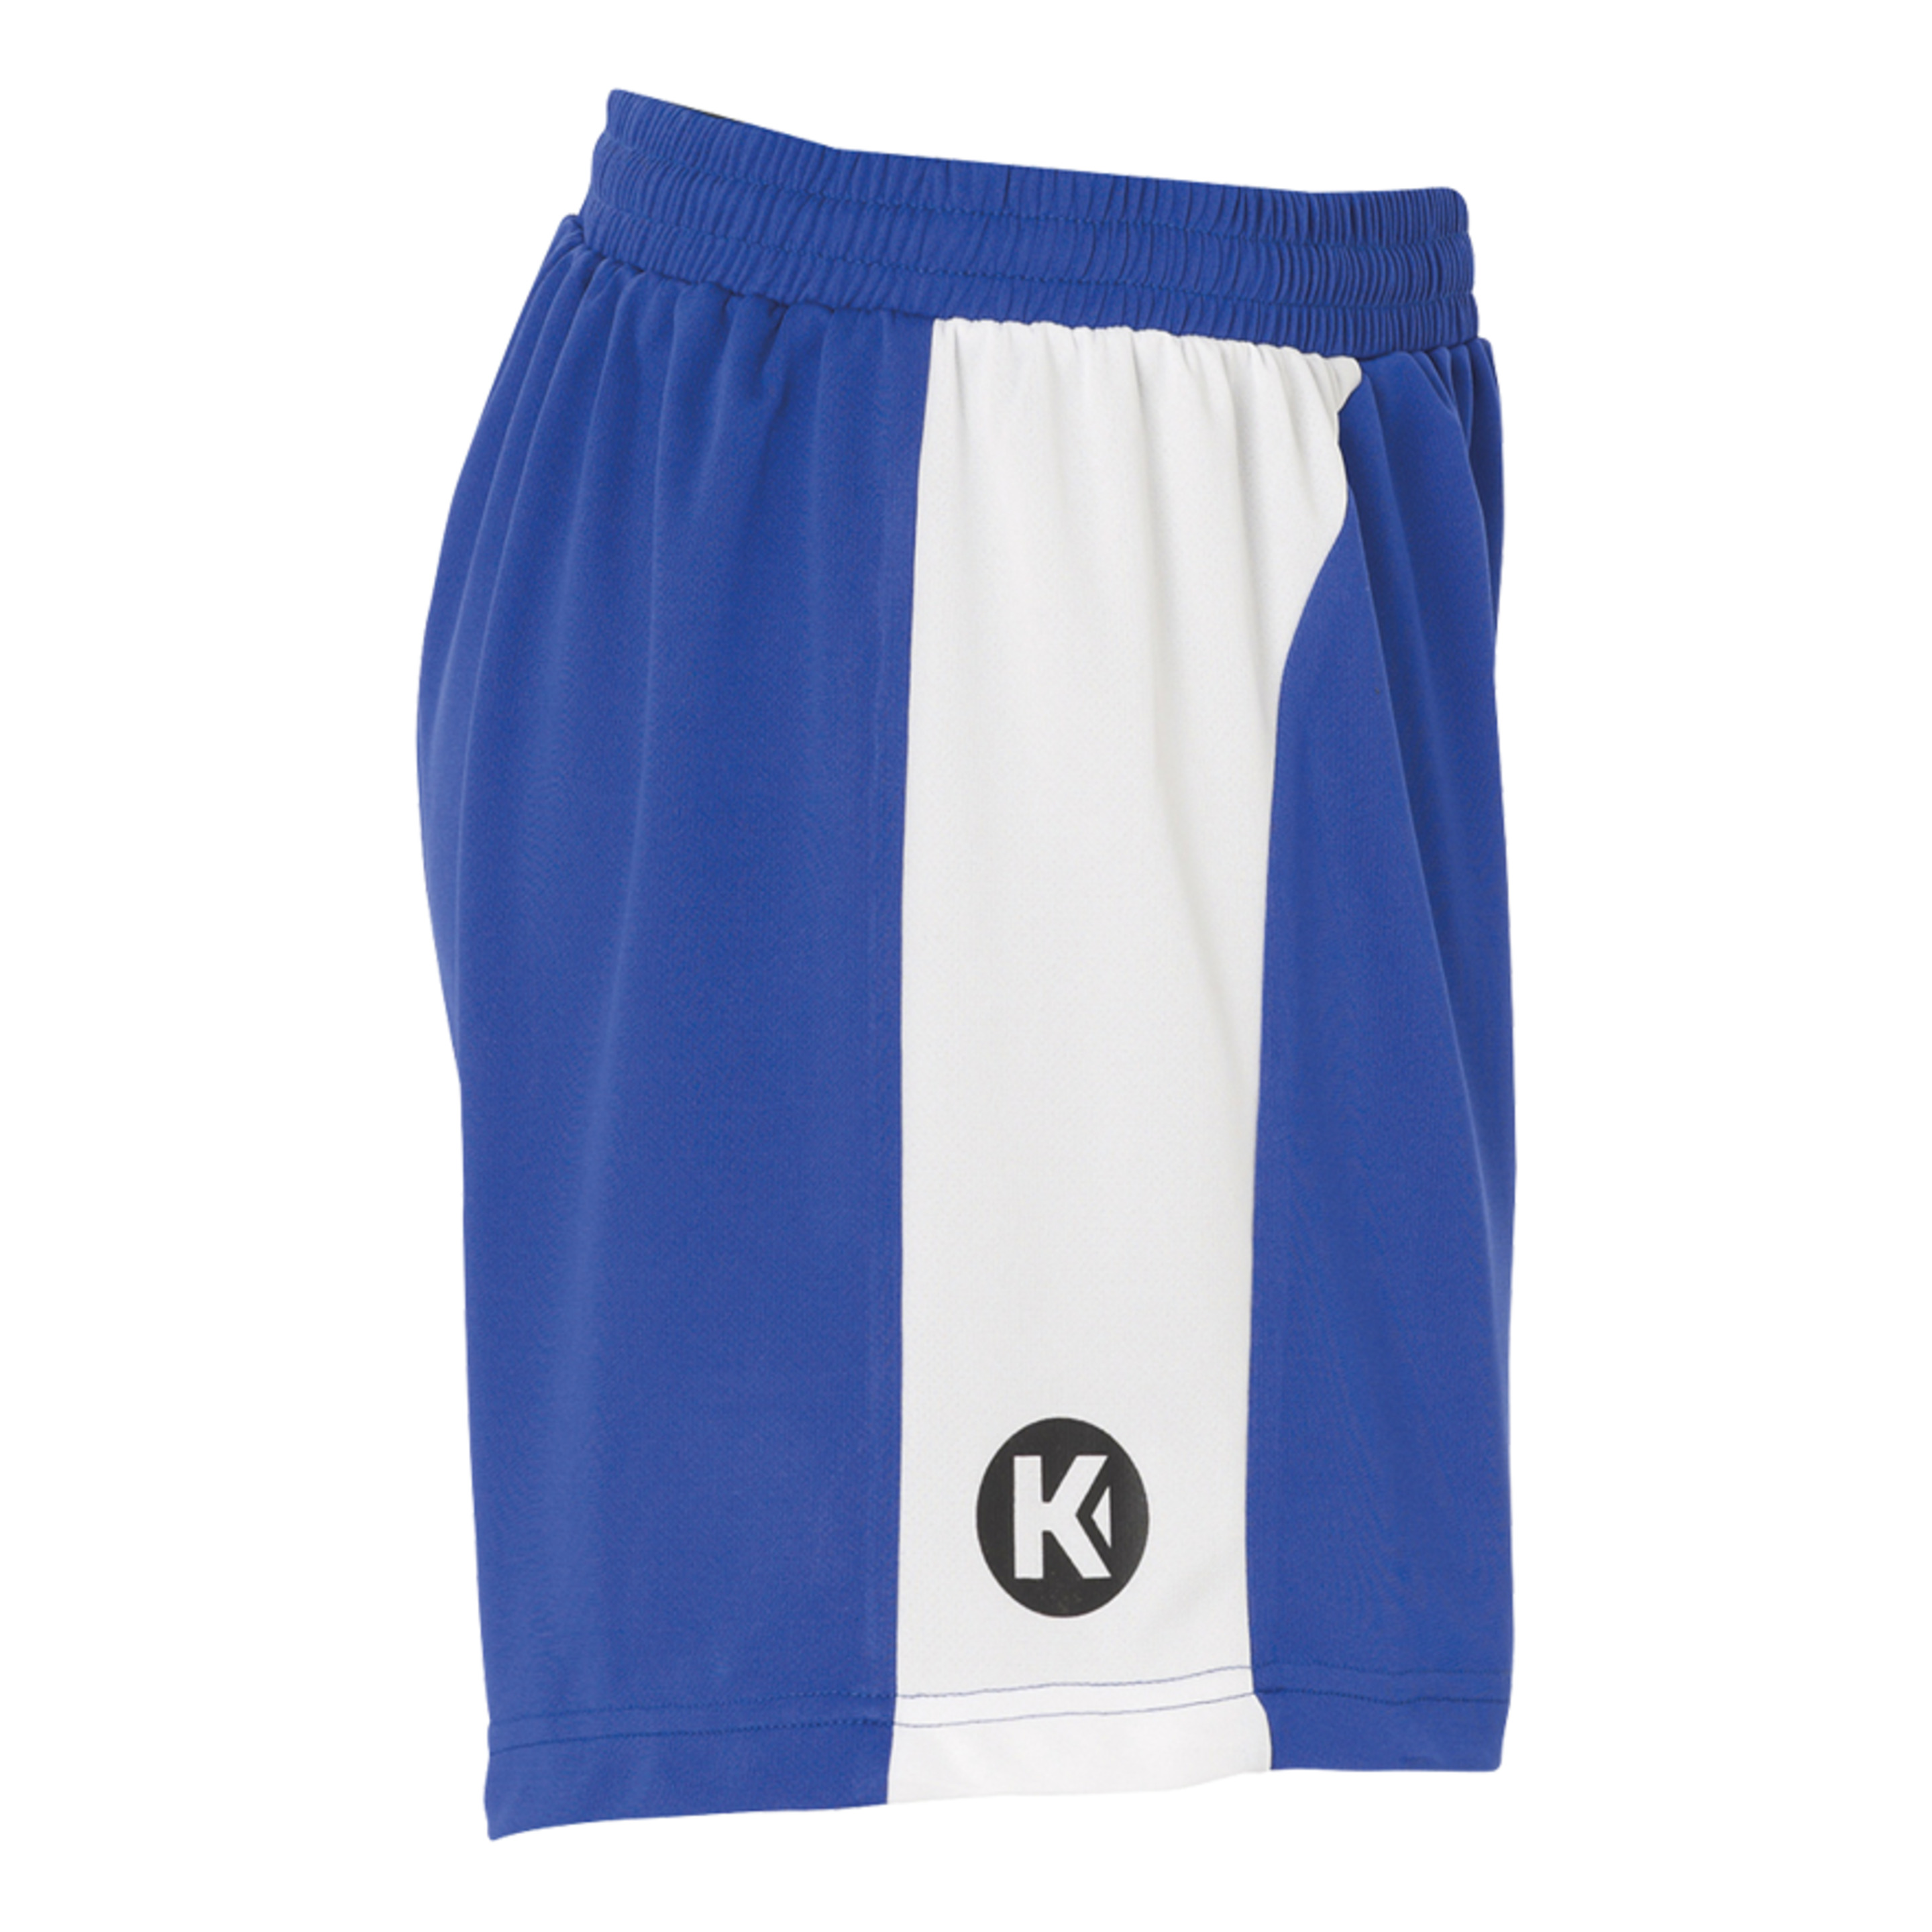 Peak Shorts De Mujer Azul Royal/blanco Kempa